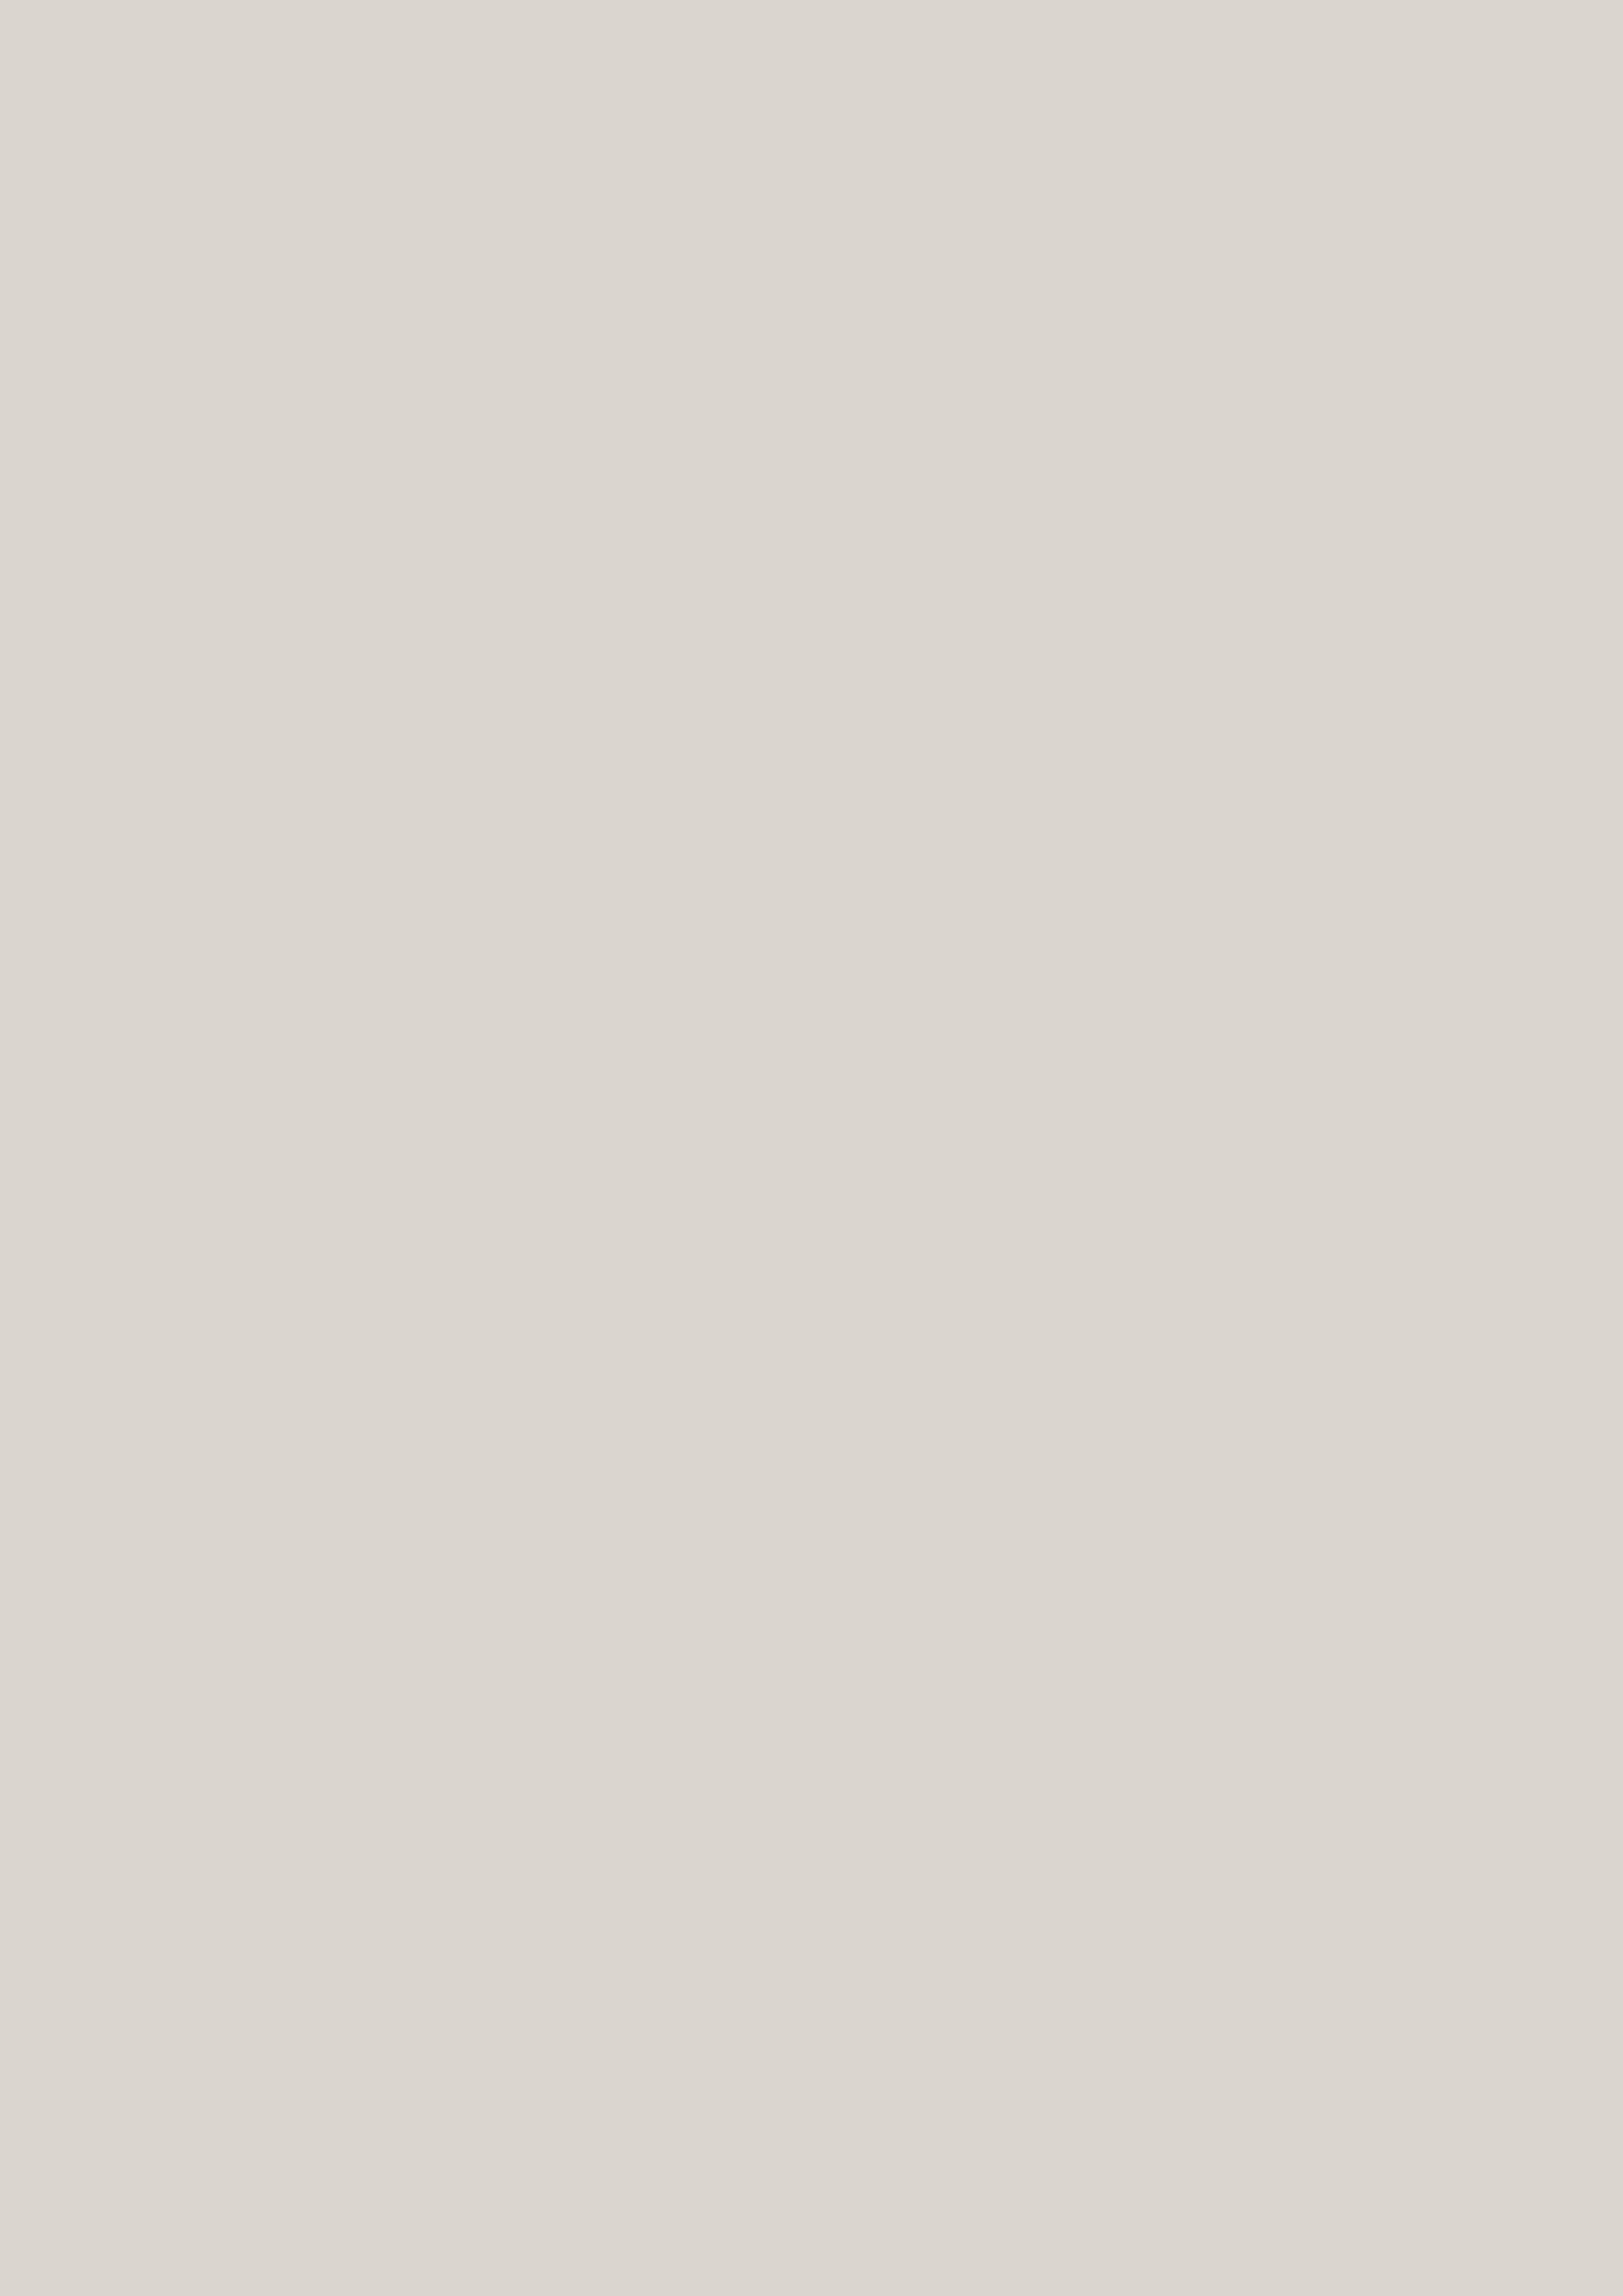 ПВХ пленка КАШЕМИР ПЕРЛМАТ для облицовки мебельных фасадов и дверей из каталога MULTIMA by IMAWELL | Каталог ПВХ пленок 3D PEARLMAT для мебели MULTIMA by IMAWELL  | Купить матовую ПВХ пленку для мебели в Москве 